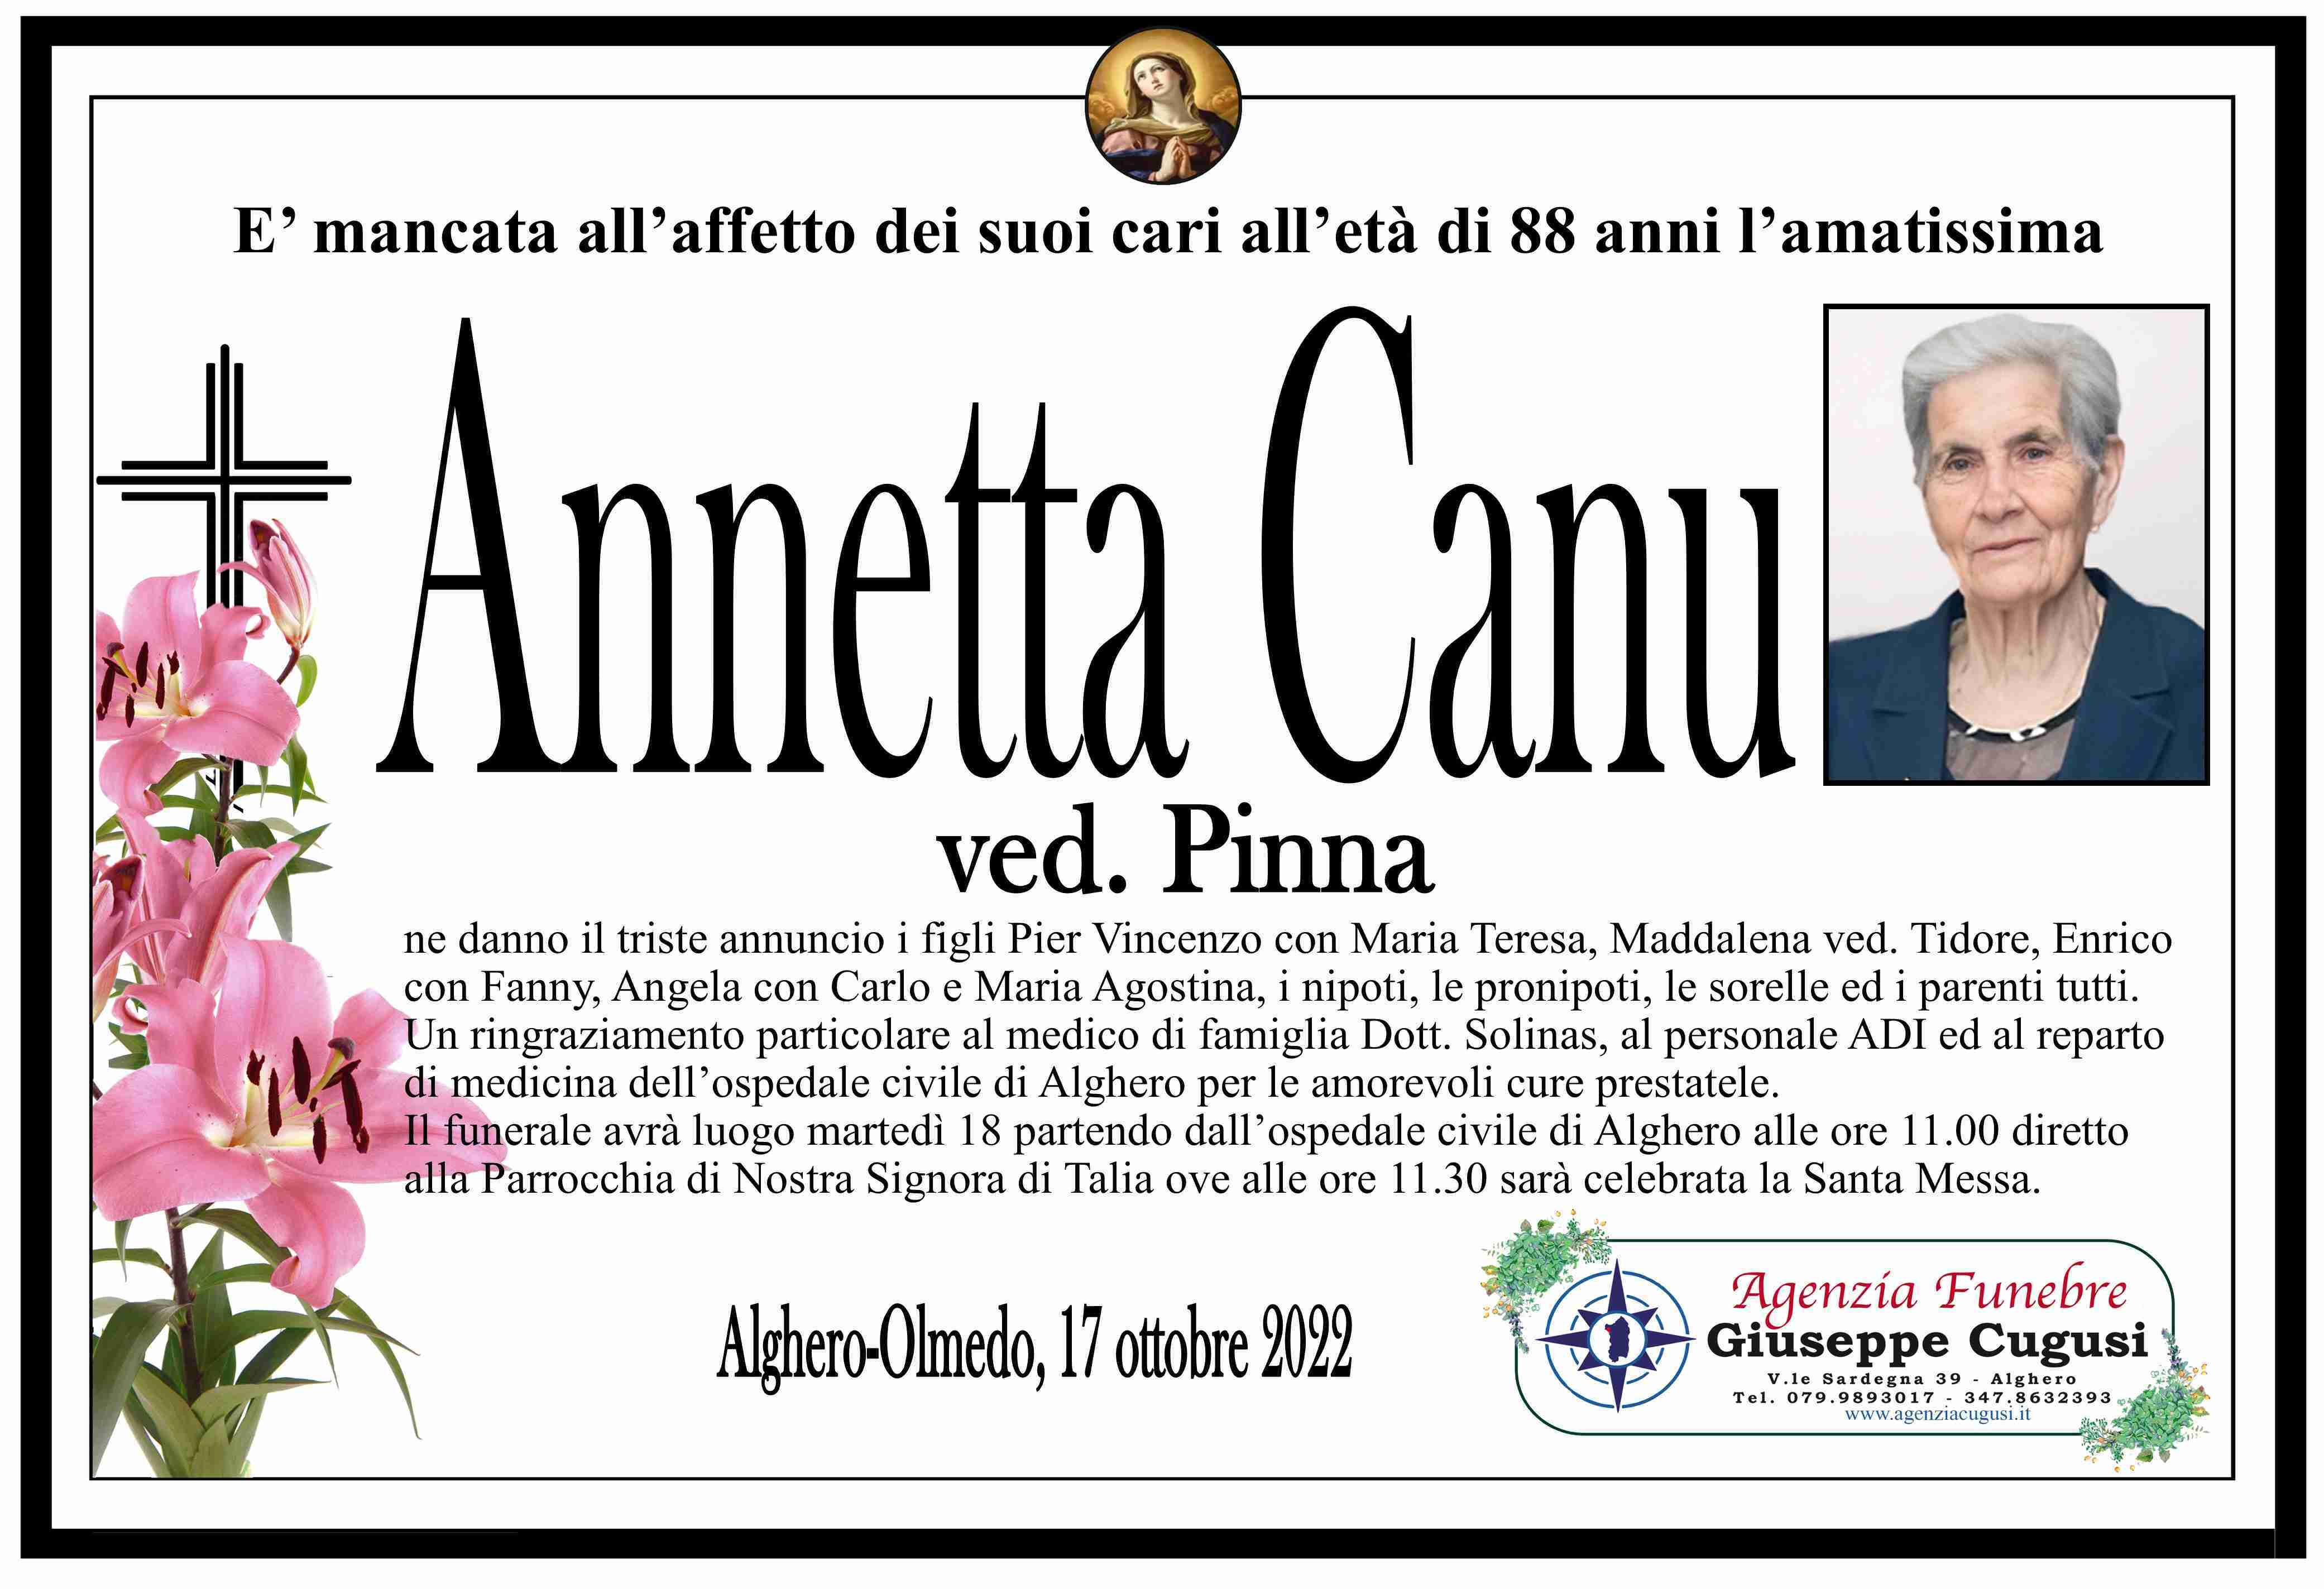 Annetta Canu